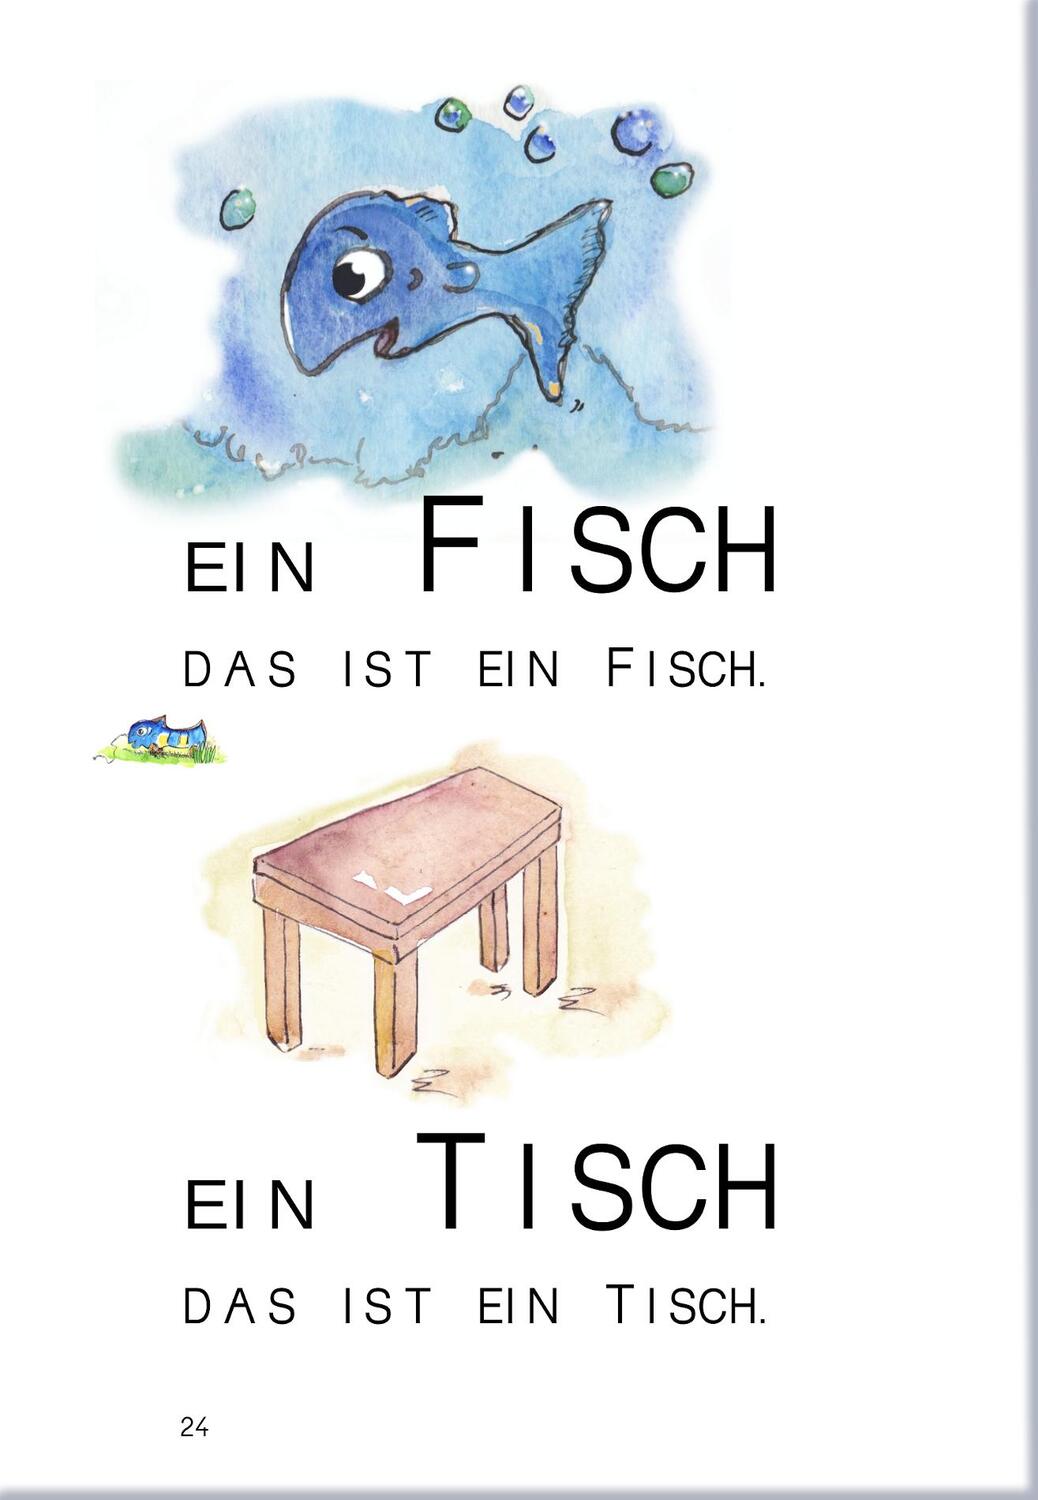 Bild: 9783942122375 | Lesen mit Biene, Frosch und Hase | Günther Thomé (u. a.) | Broschüre